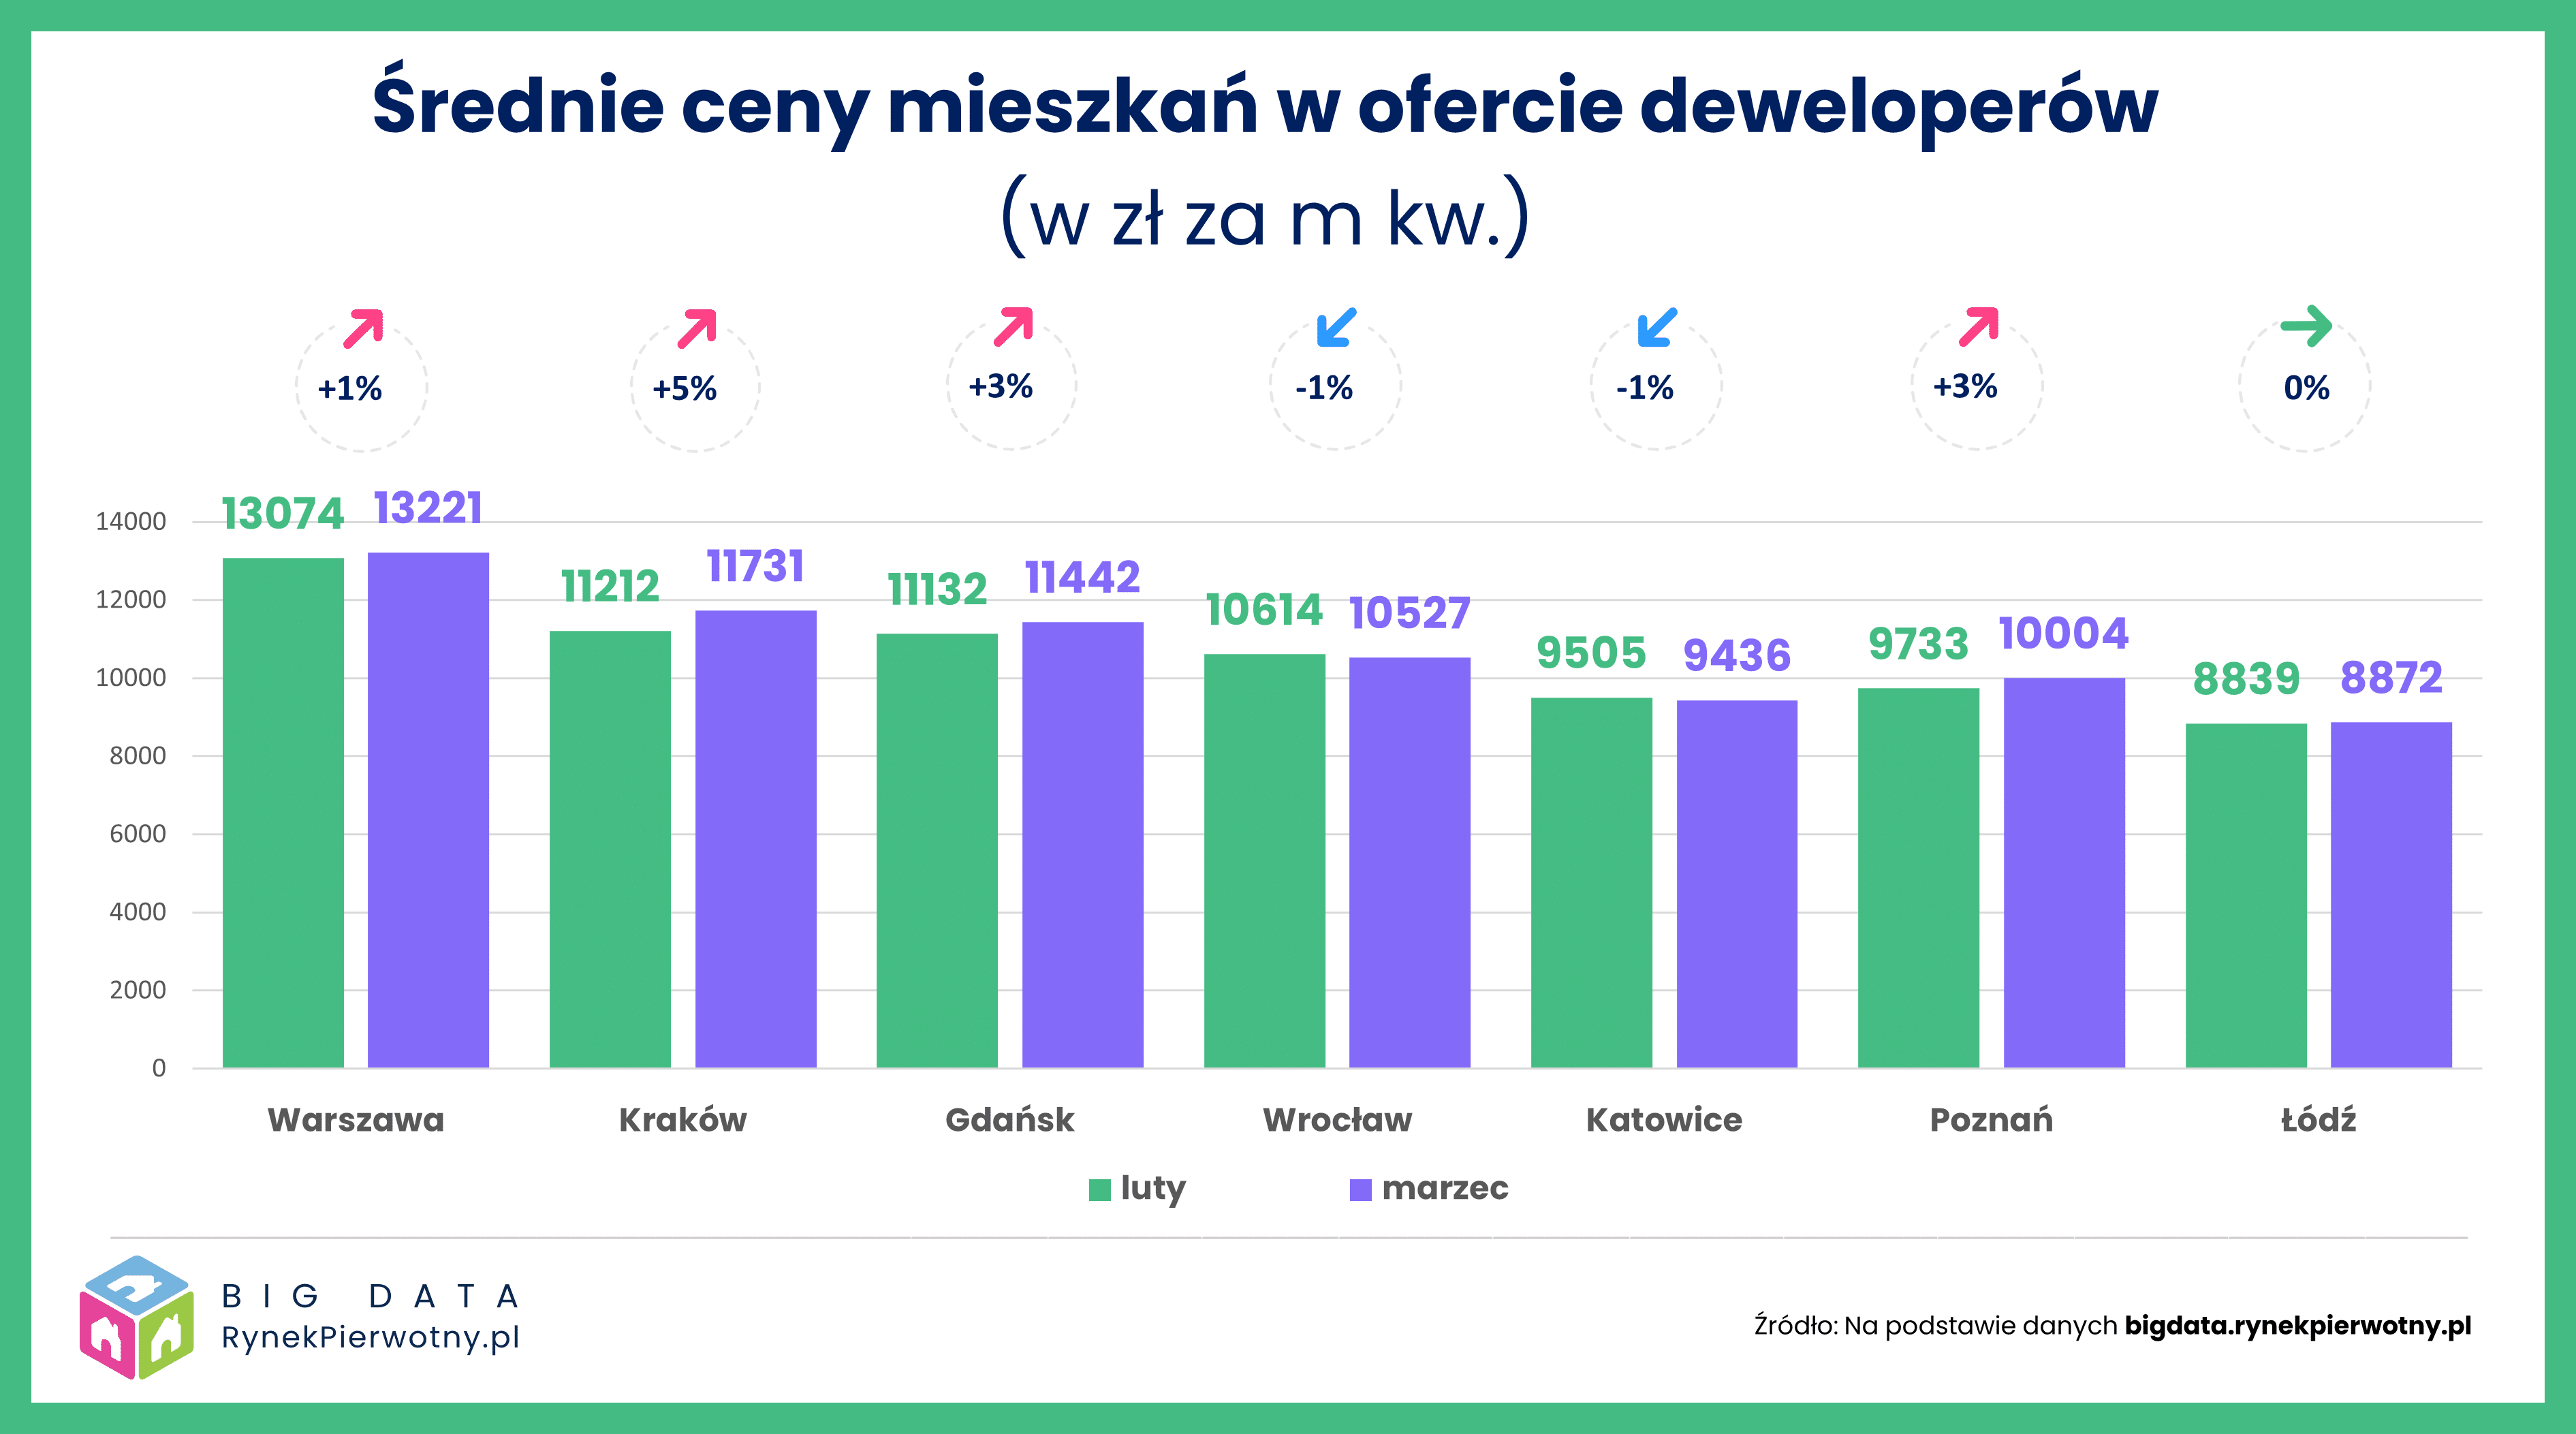 Ceny lokali najmocniej wzrosły w Krakowie